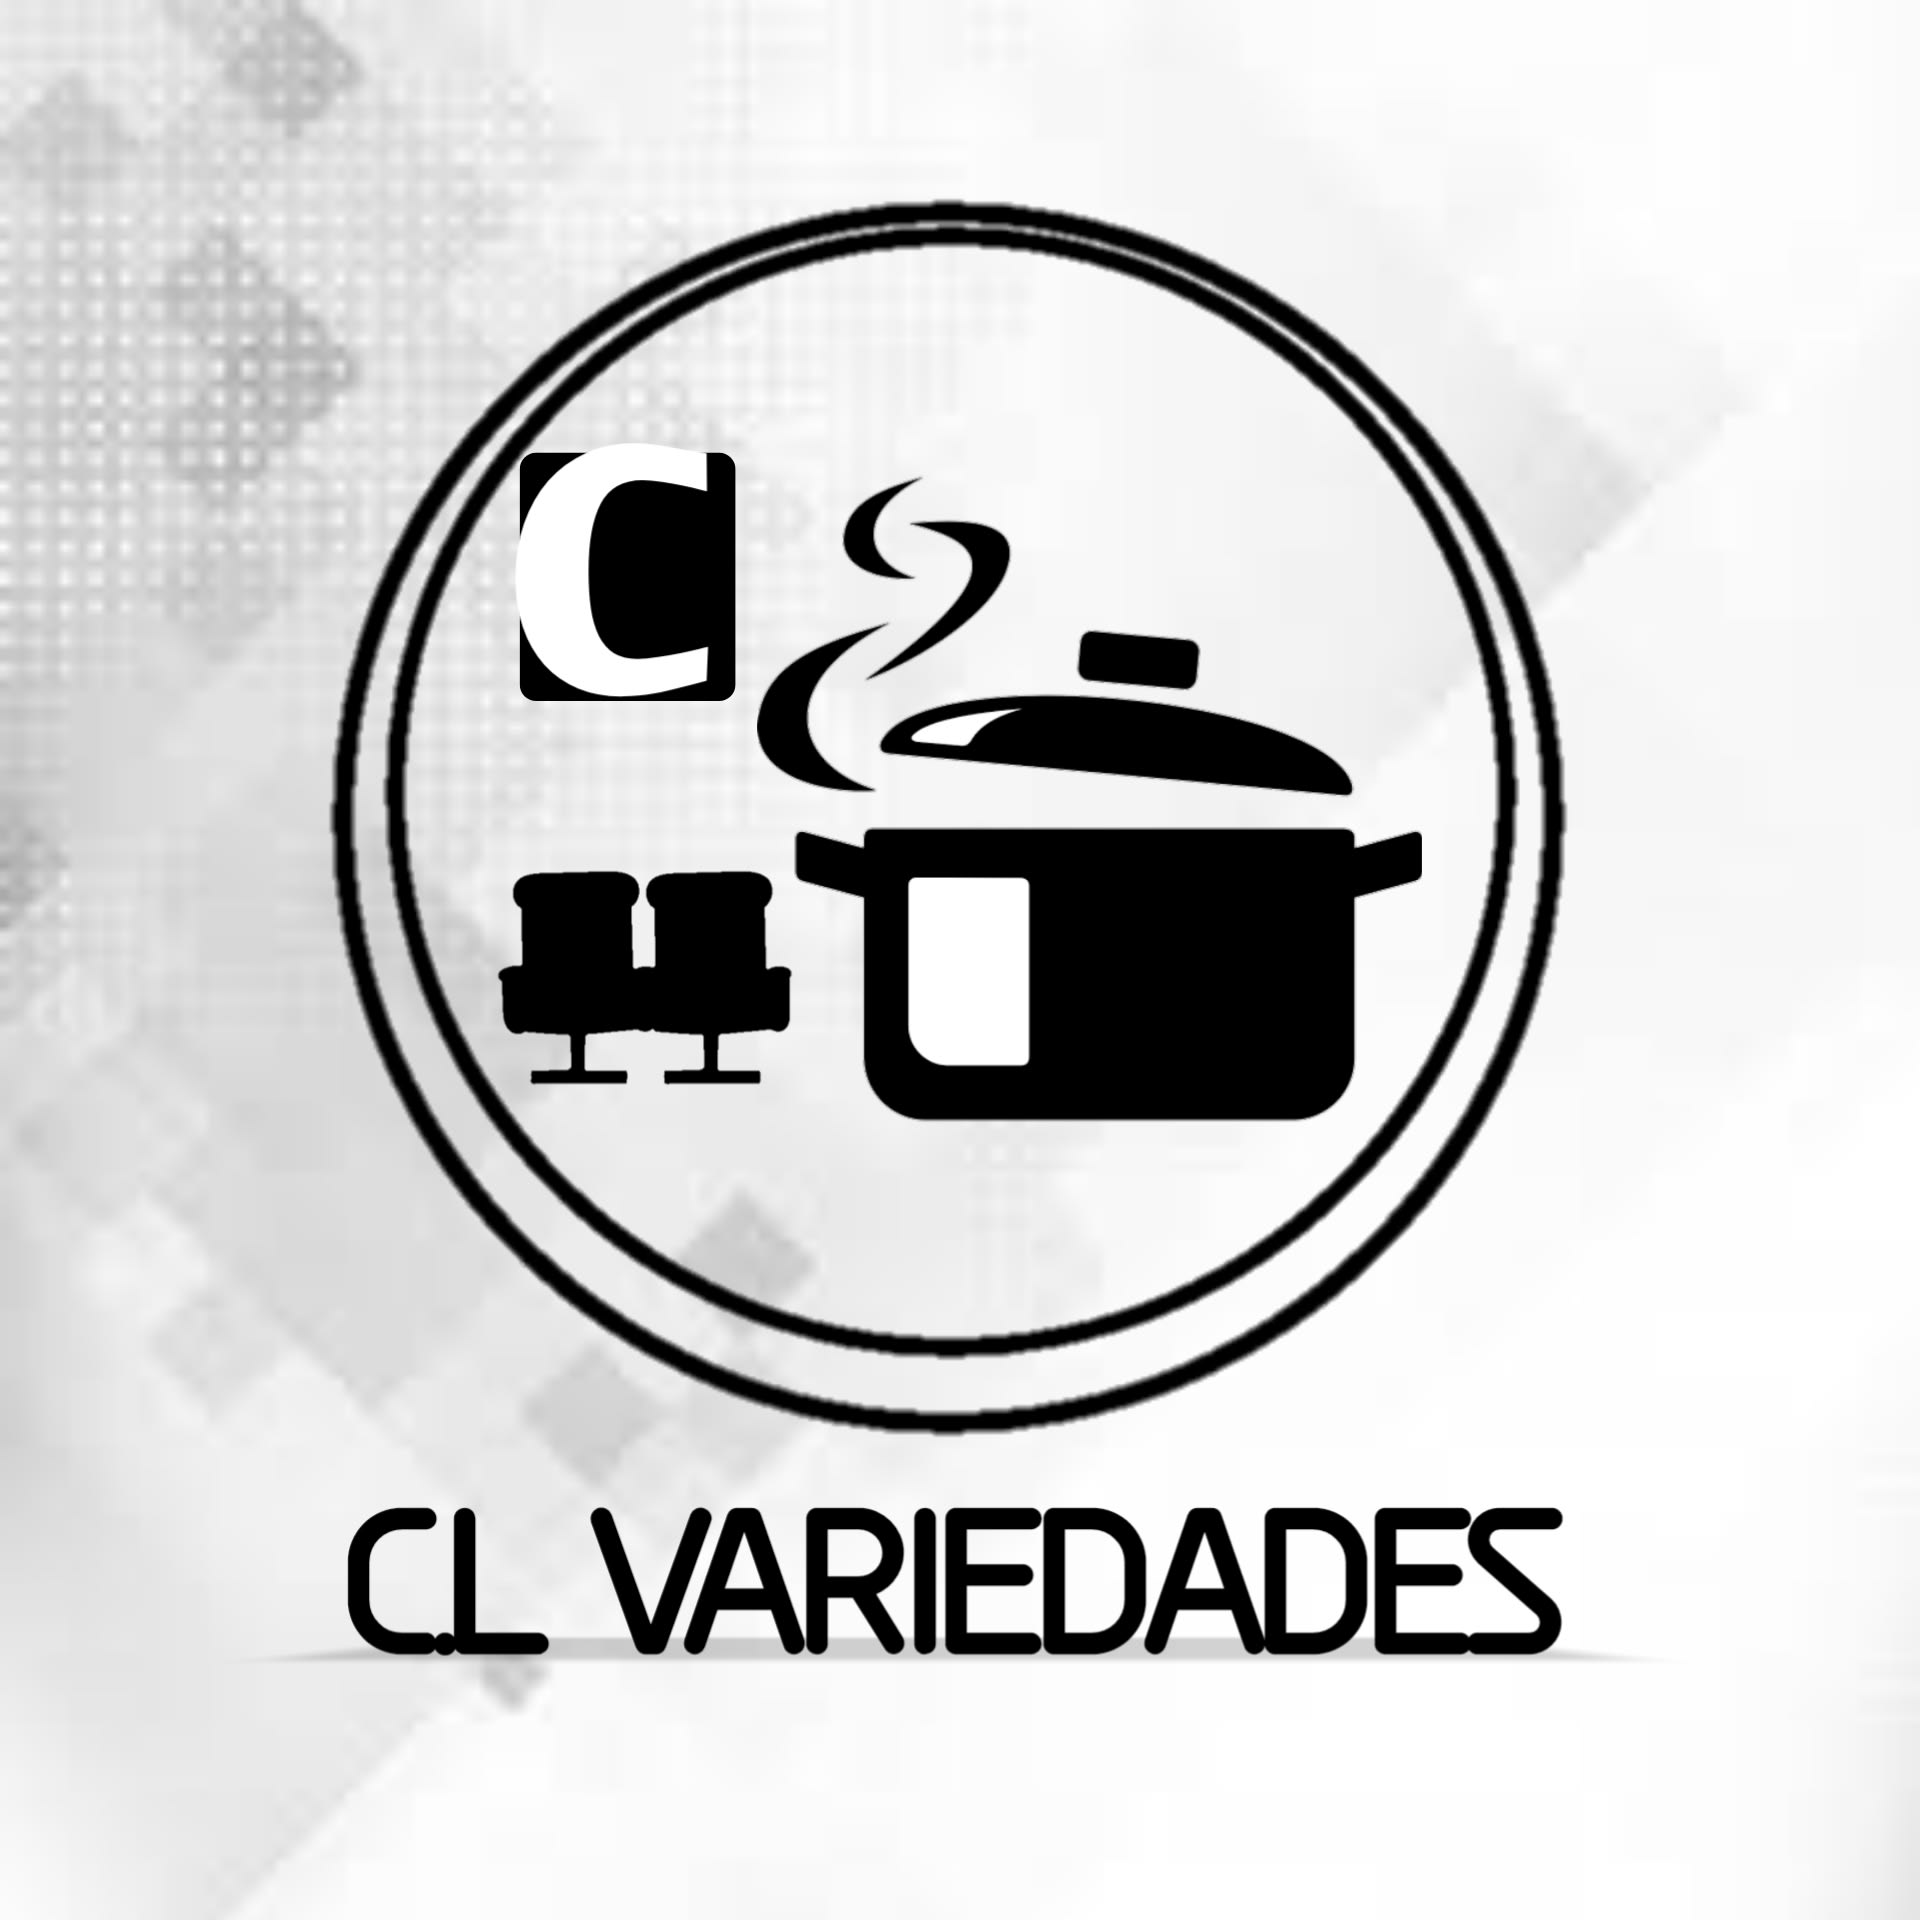 Carlos Variedades